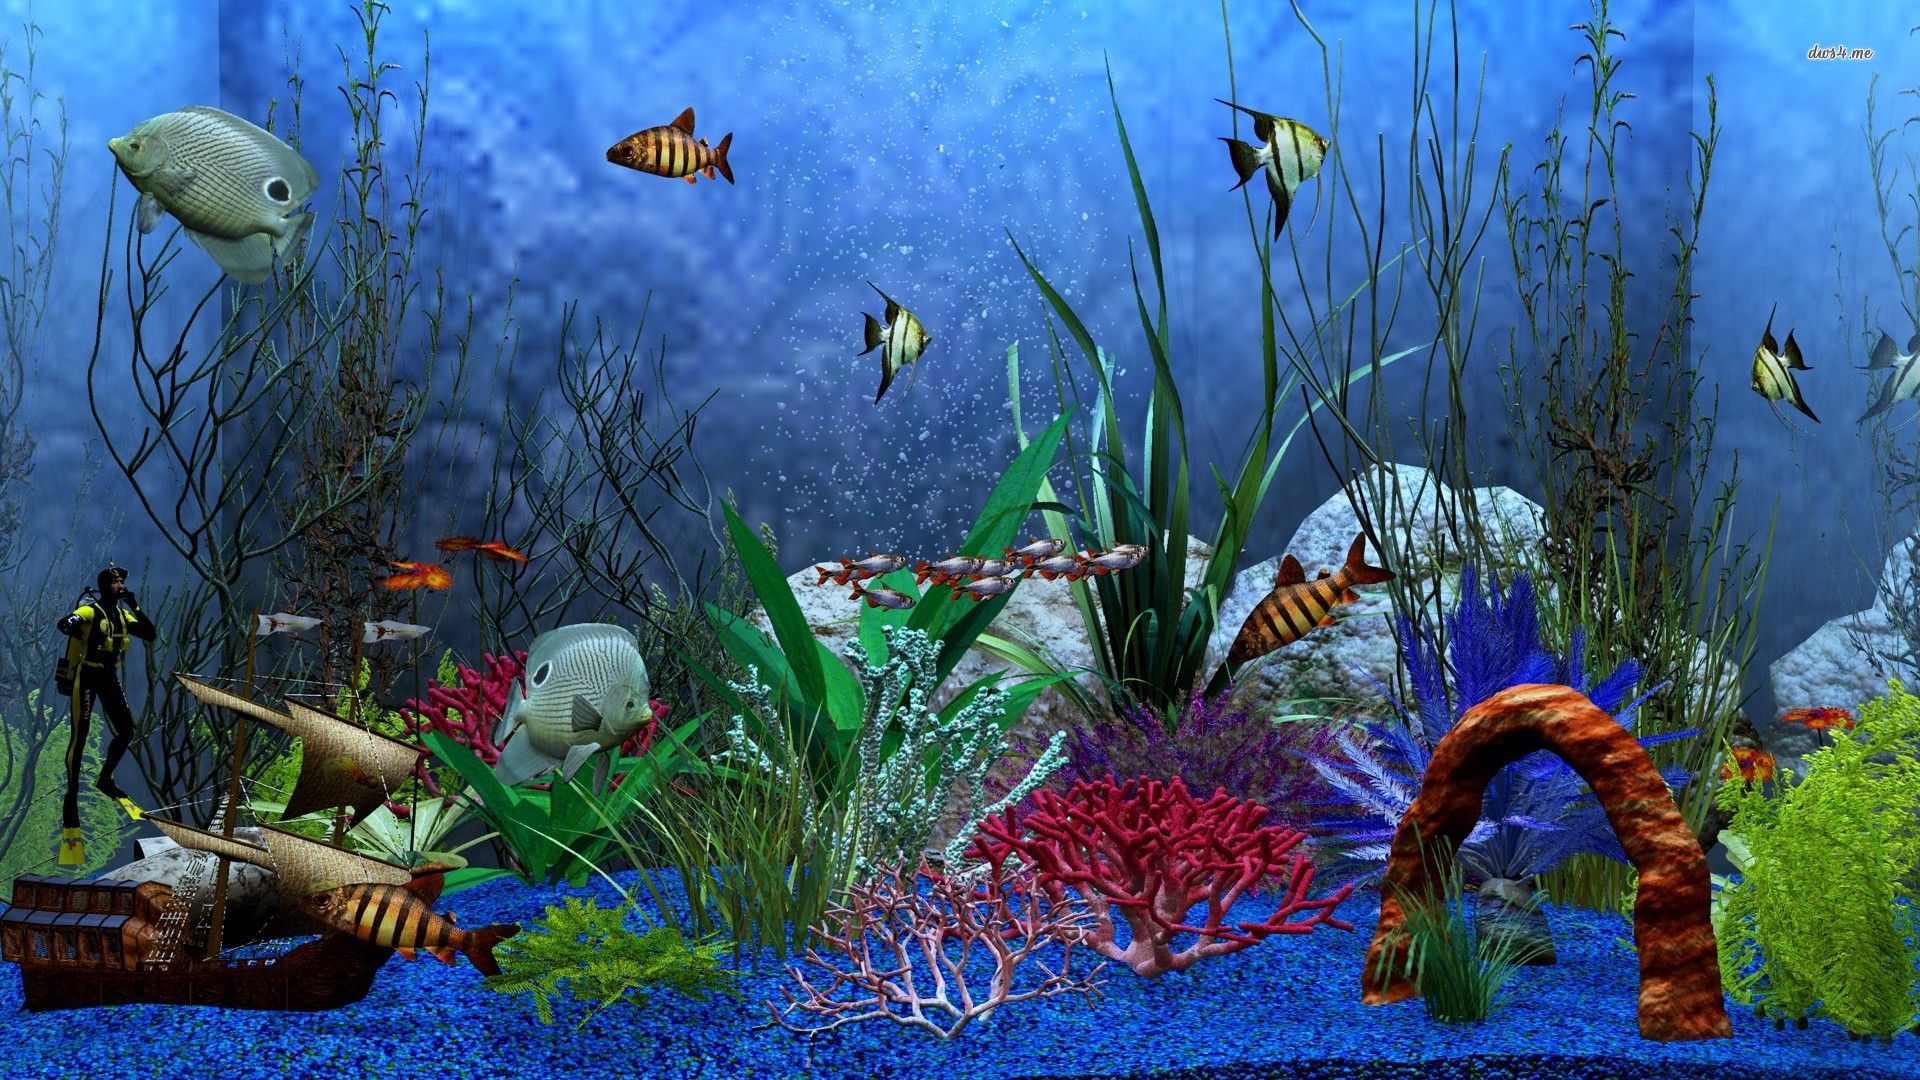 Aquarium wallpaper - Digital Art wallpapers